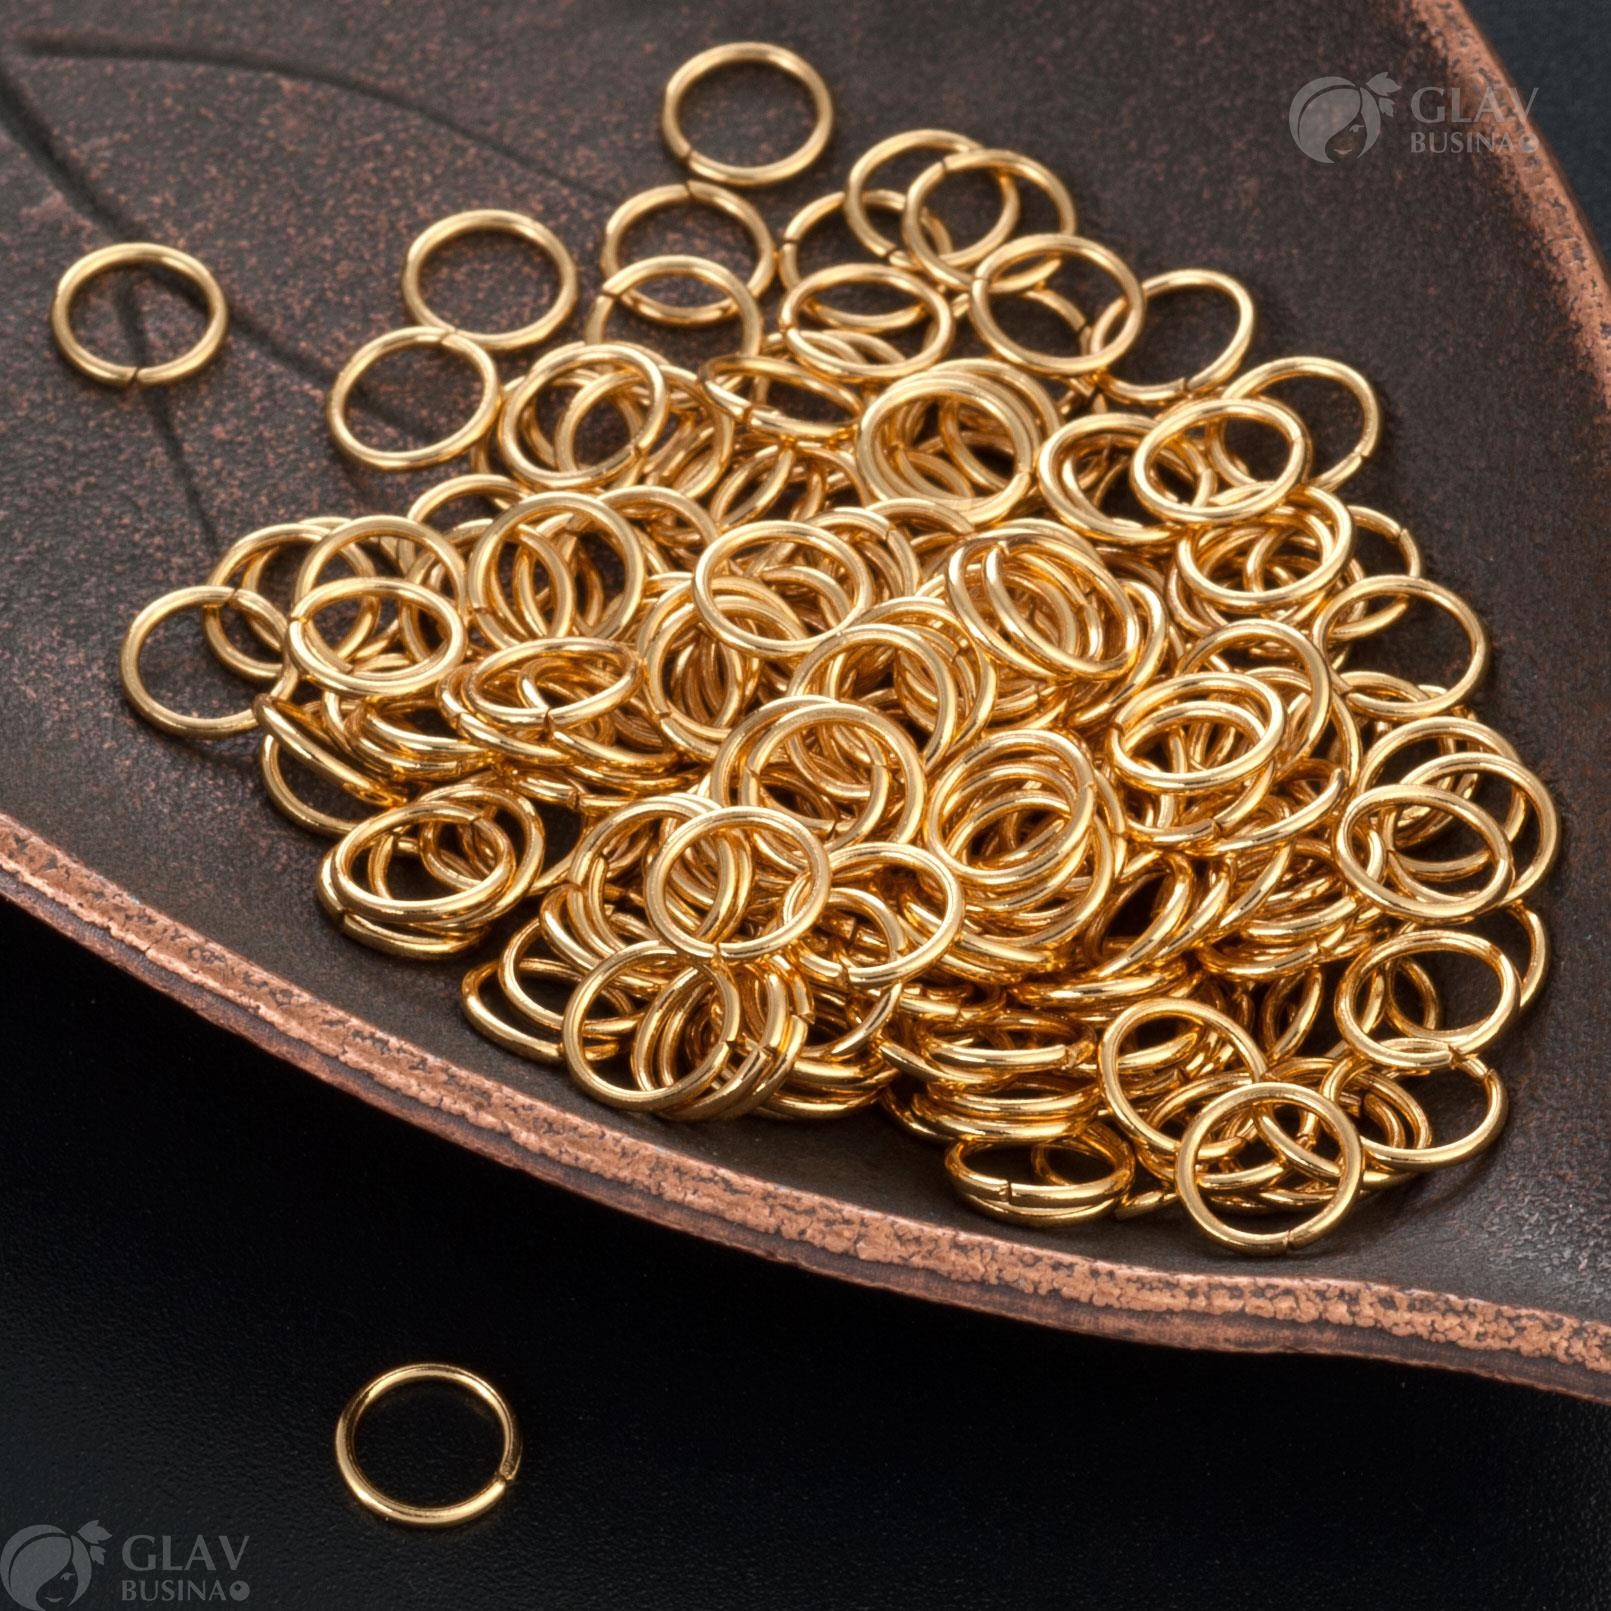 Золотистые соединительные колечки из хирургической стали, размер 6x0.7мм, с долговечным покрытием для украшений и ремесел.